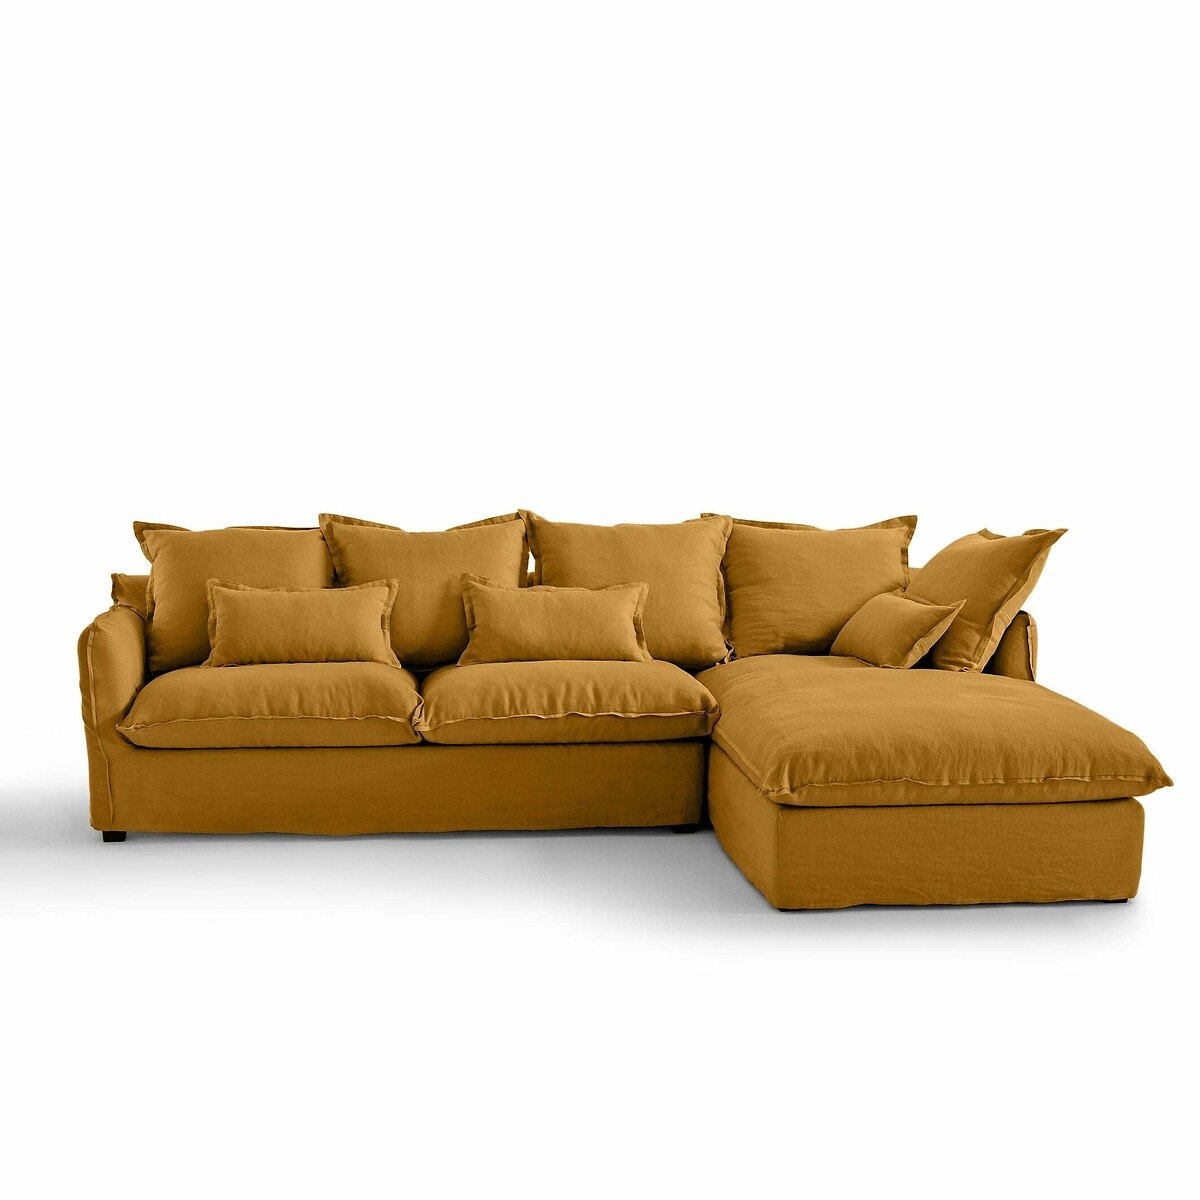 Σπίτι > Έπιπλα > Καθιστικό > Καναπέδες > Γωνιακοί καναπέδες Γωνιακός καναπές-κρεβάτι από γκοφρέ λινό ύφασμα με τεχνολογία Bultex Μ190xΠ294xΥ90cm